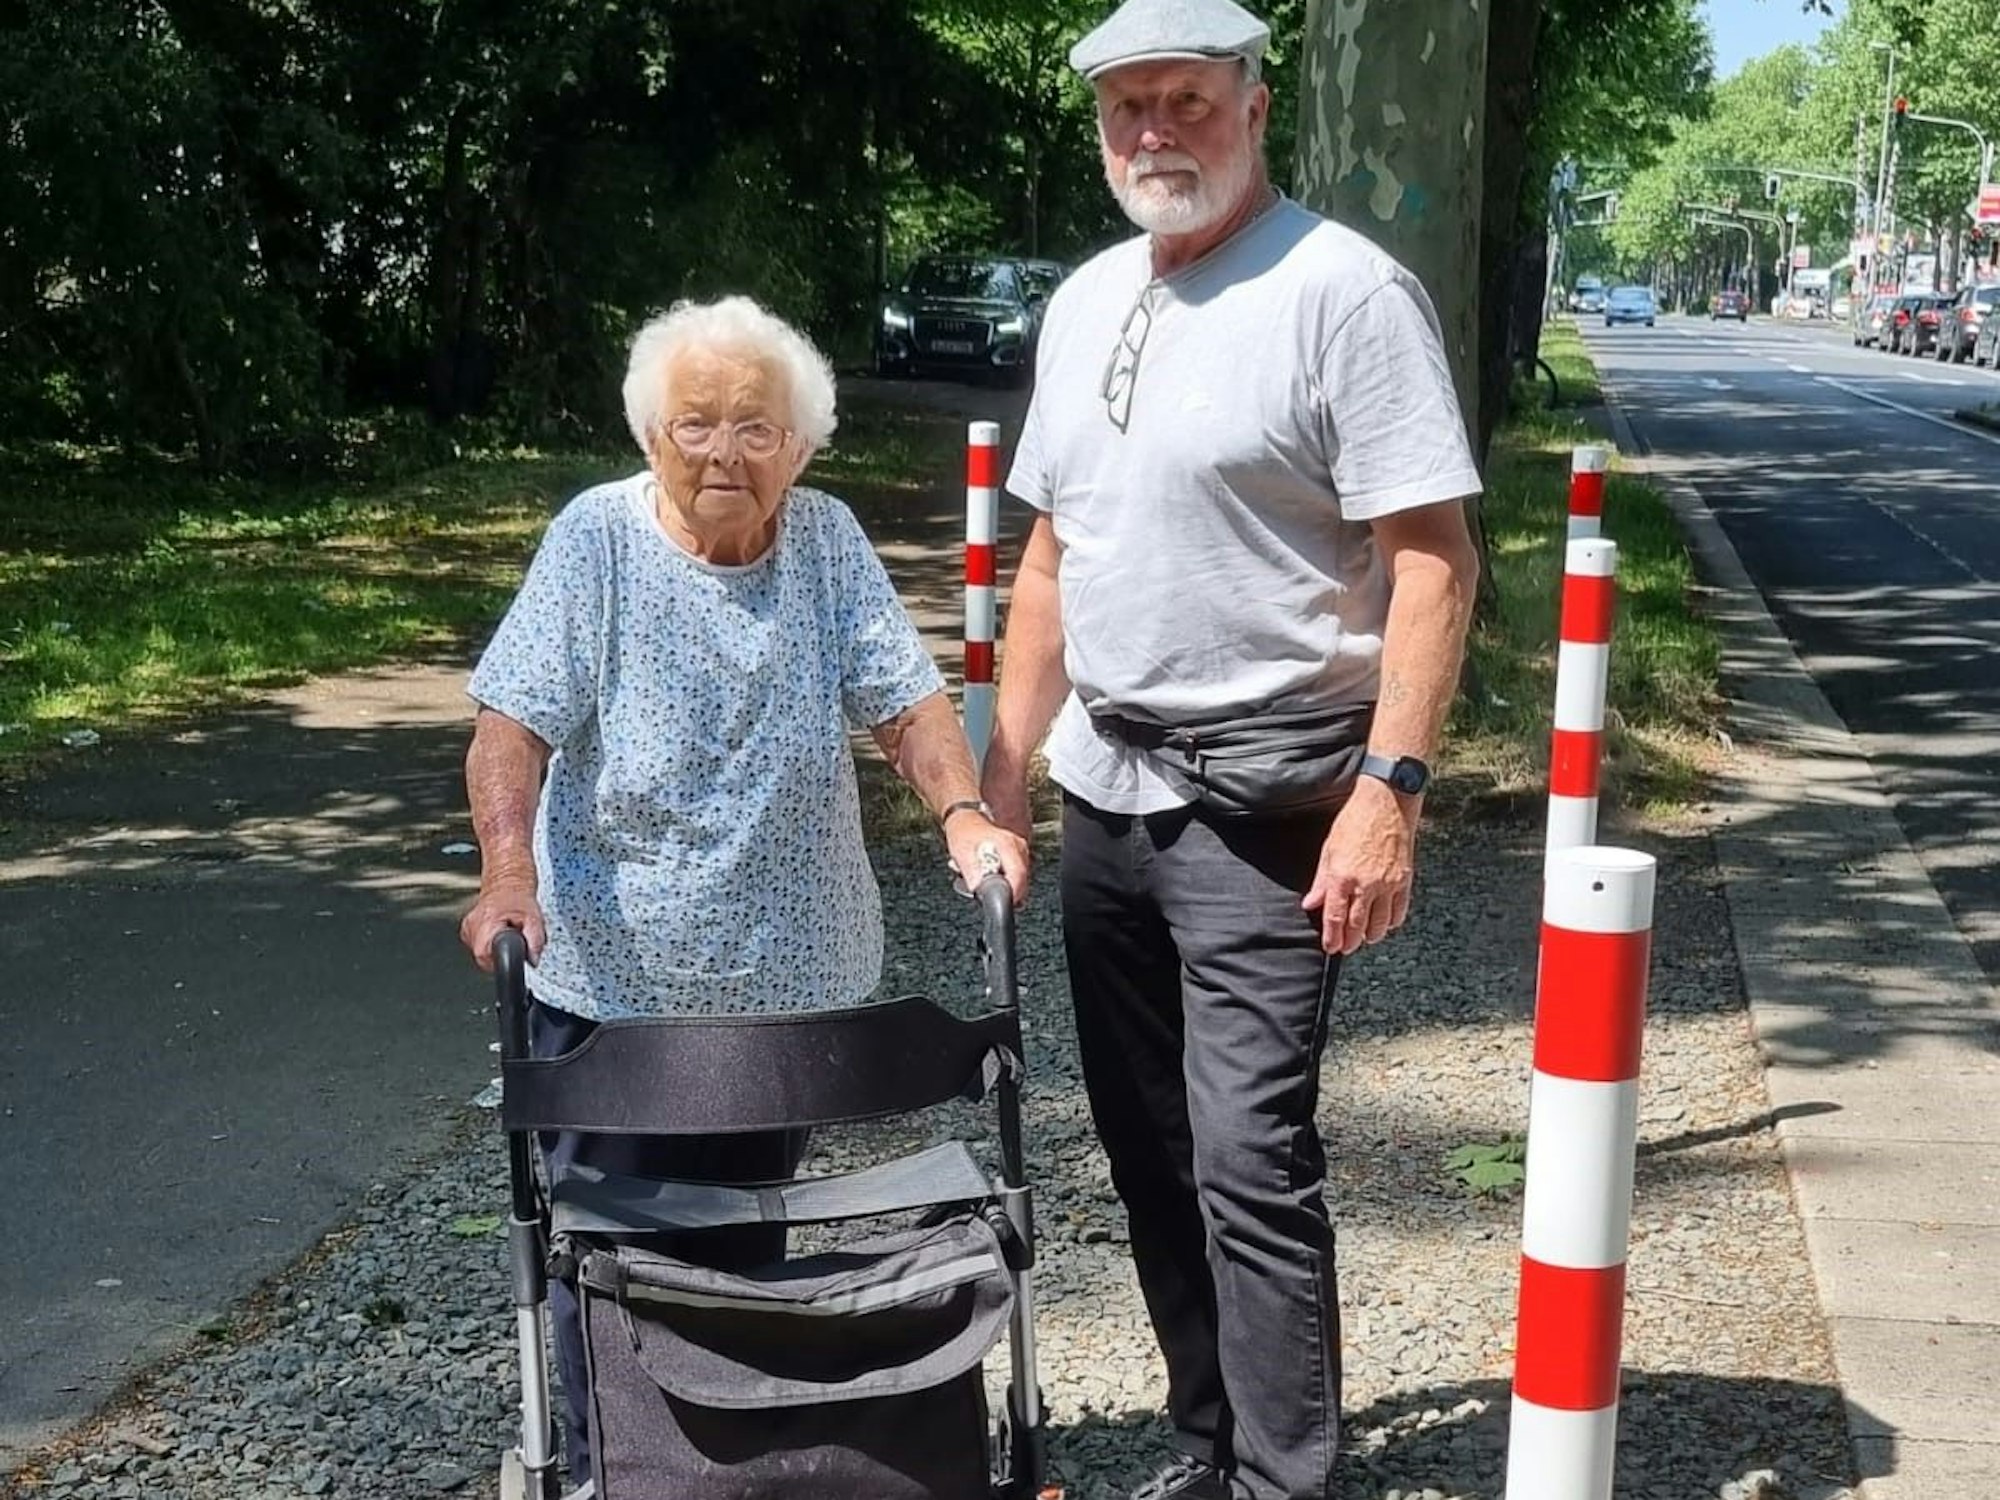 Werner Mittelstaedt (66) steht neben seiner Mutter Christel (87), die ihren Rollator festhält, neben der Frankfurter Straße in Köln-Ostheim.